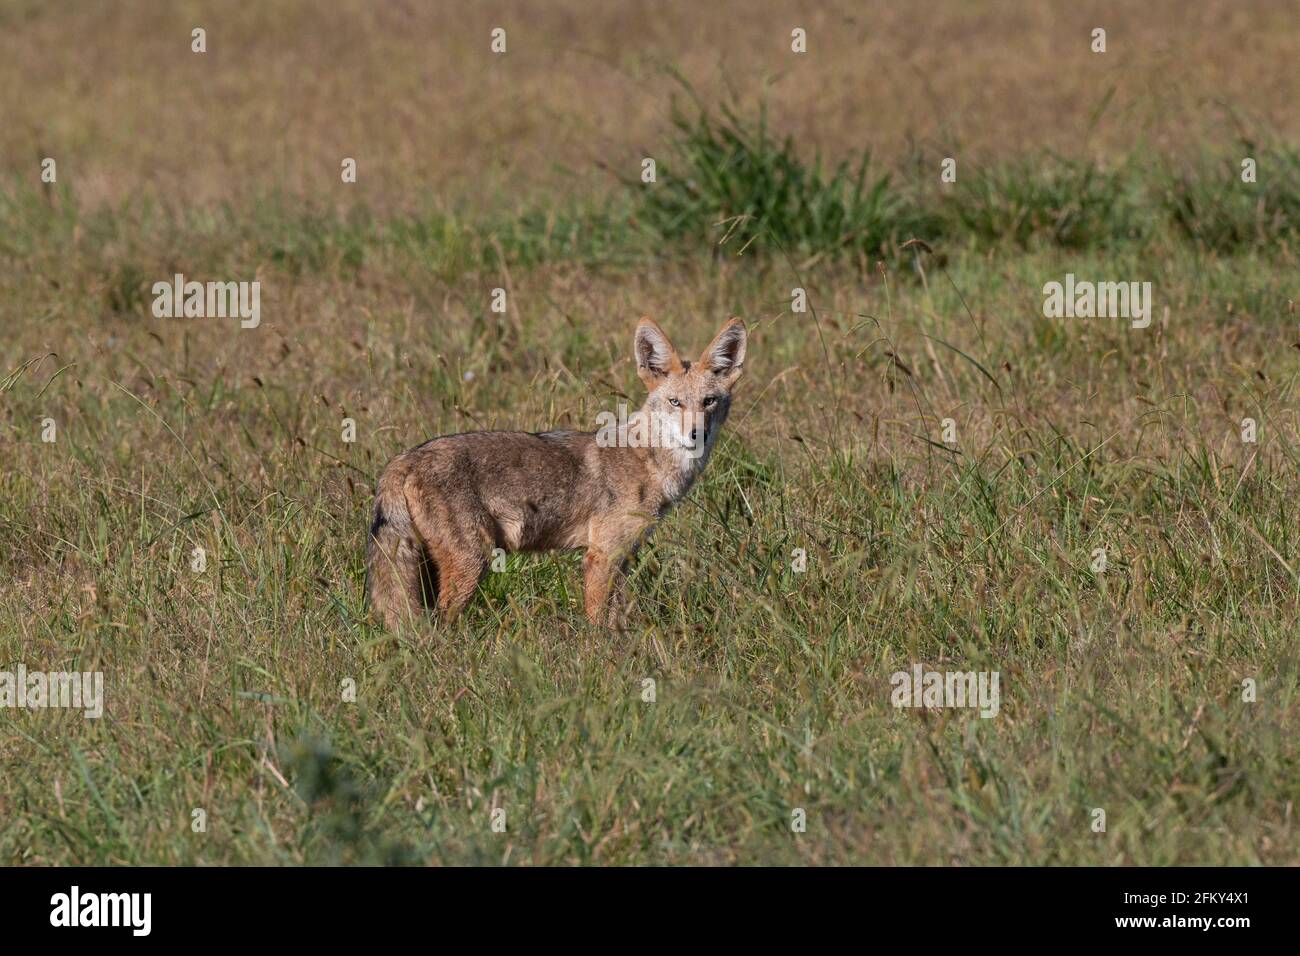 Curieux Coyote, Canis latrans, herbage, prédateur, mammifère à fourrure, Vallée de San Joaquin, comté de Stanislaus, Californie Banque D'Images